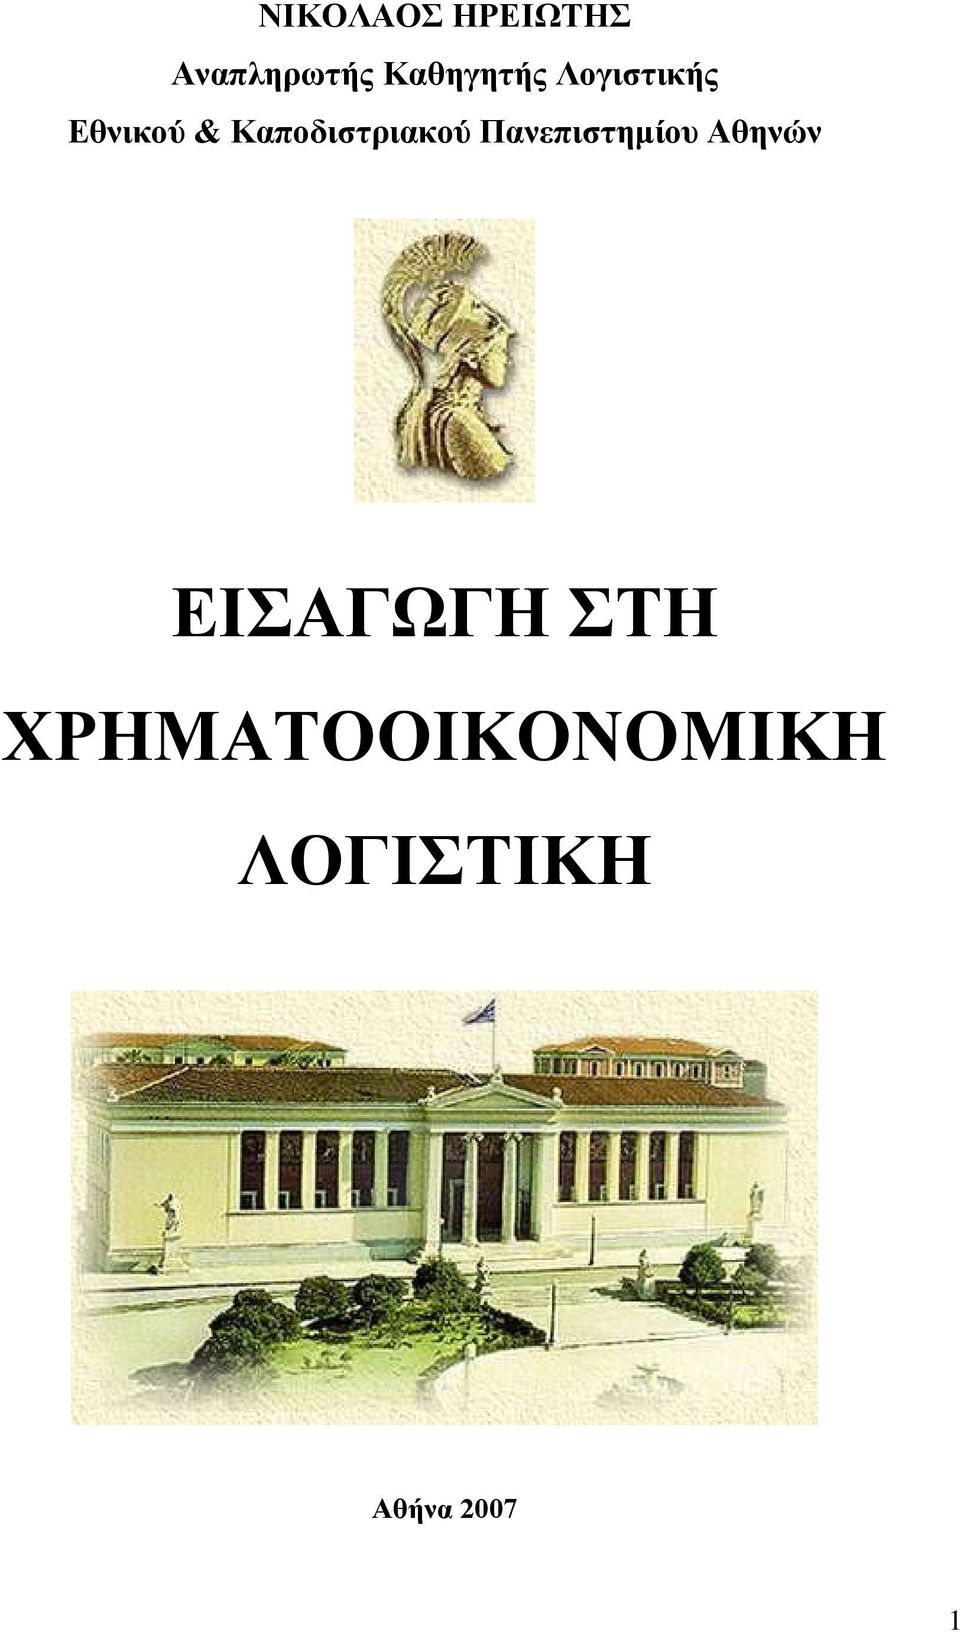 Καποδιστριακού Πανεπιστηµίου Αθηνών